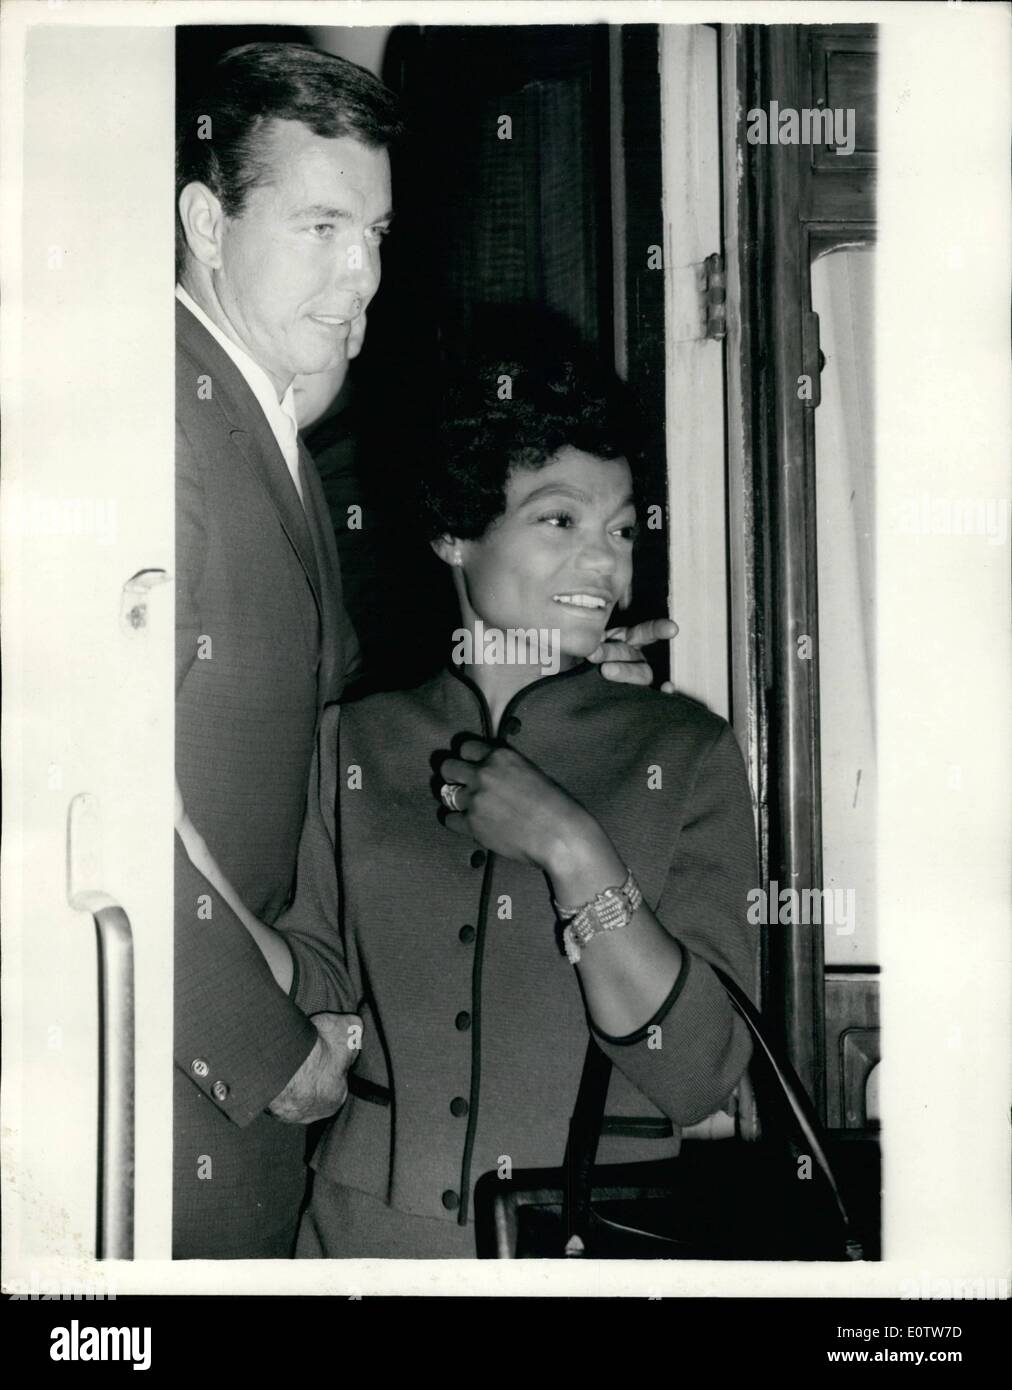 Agosto 08, 1960 - Esotica Songstress Eartha Kitt arriva Ã¢â'¬â€oe esotici canto americano star, Eartha Kitt, arrivati alla stazione di Paddington Foto Stock